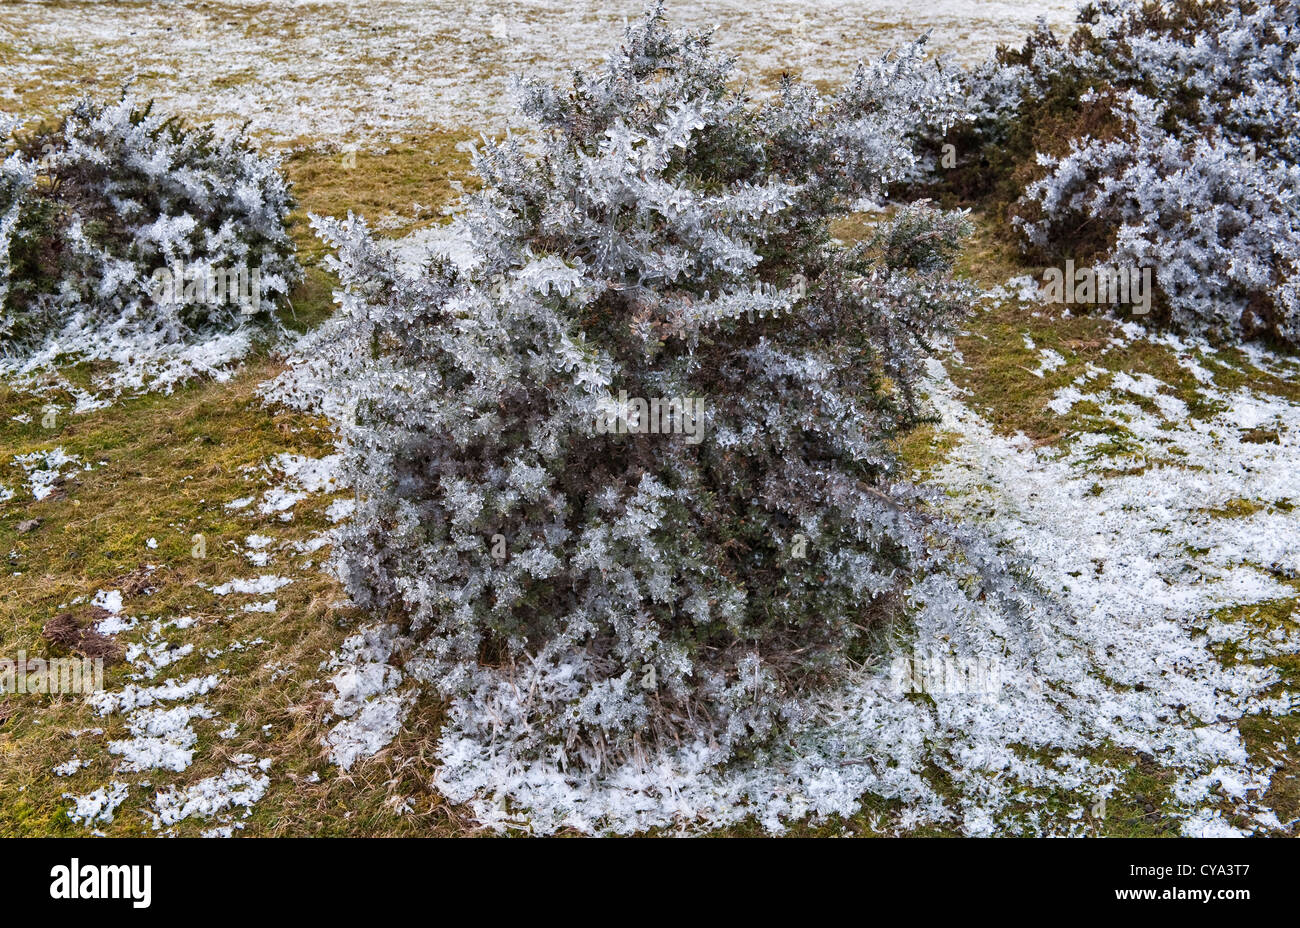 Ein gefrorener Ginsterbusch (Ulex europaeus) auf Litton Hill, in der Nähe von Knighton, Wales, Großbritannien, im Winter Stockfoto